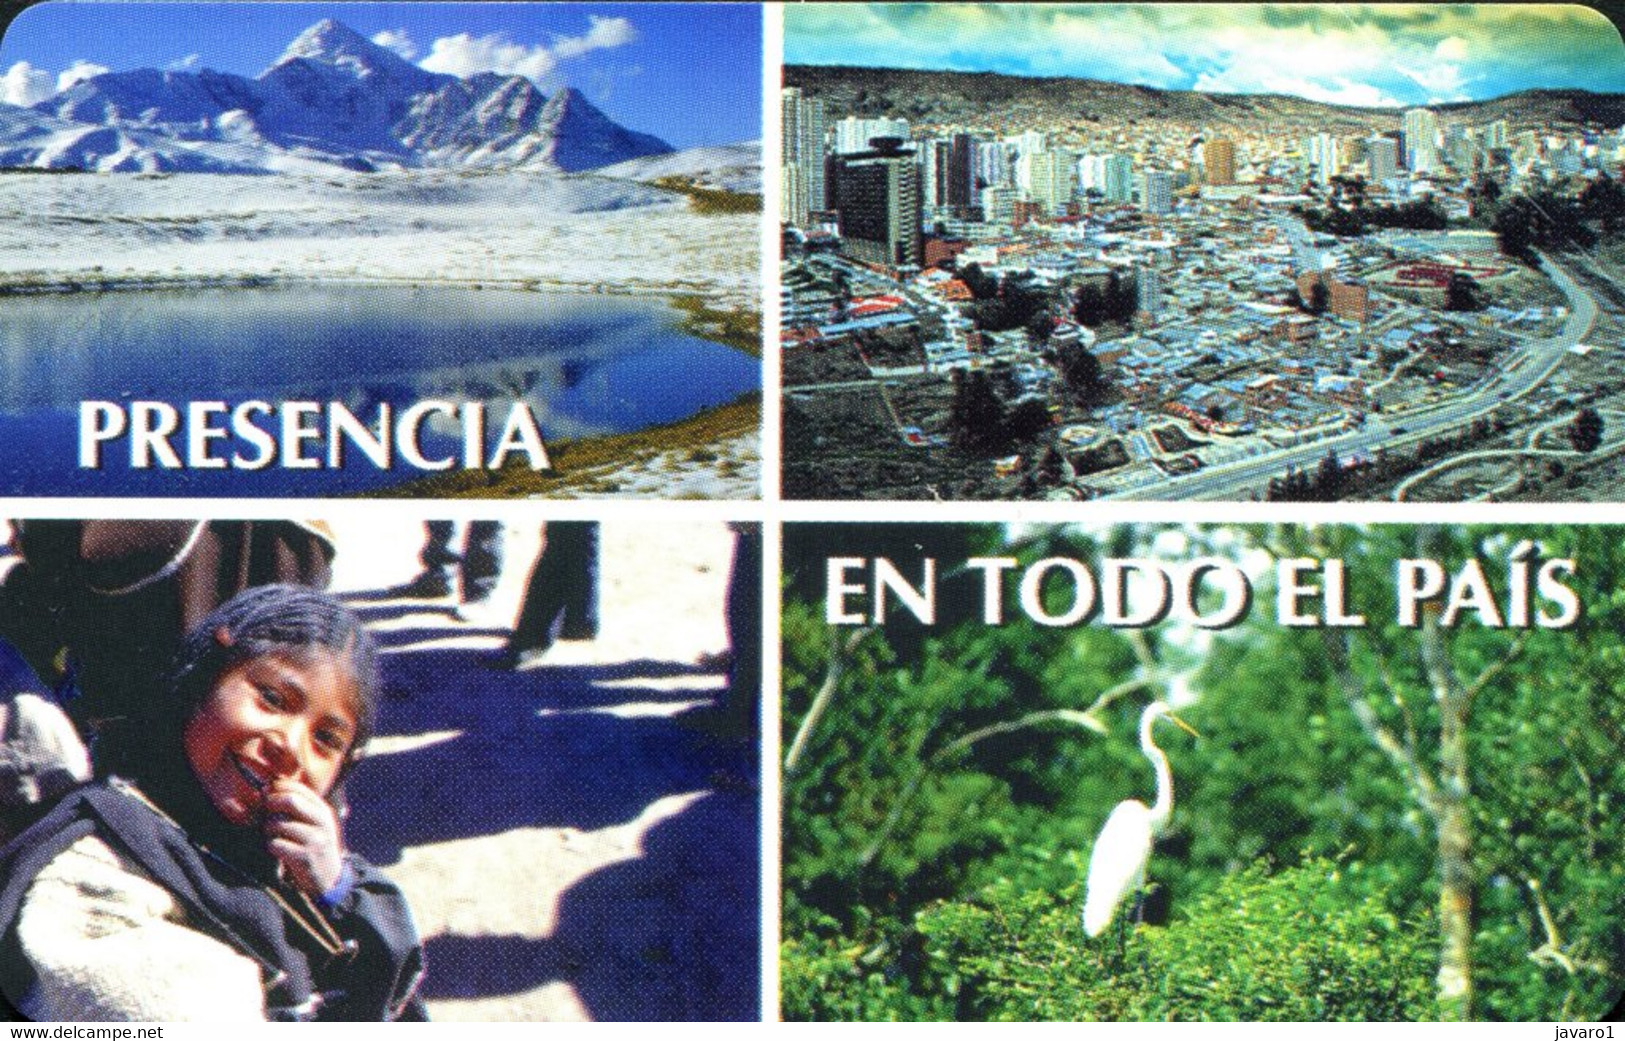 BOLIVIA : BOLU01 Bs 5 Presencia En Todo El Pais MINT Exp: 31/12/98 - Bolivia